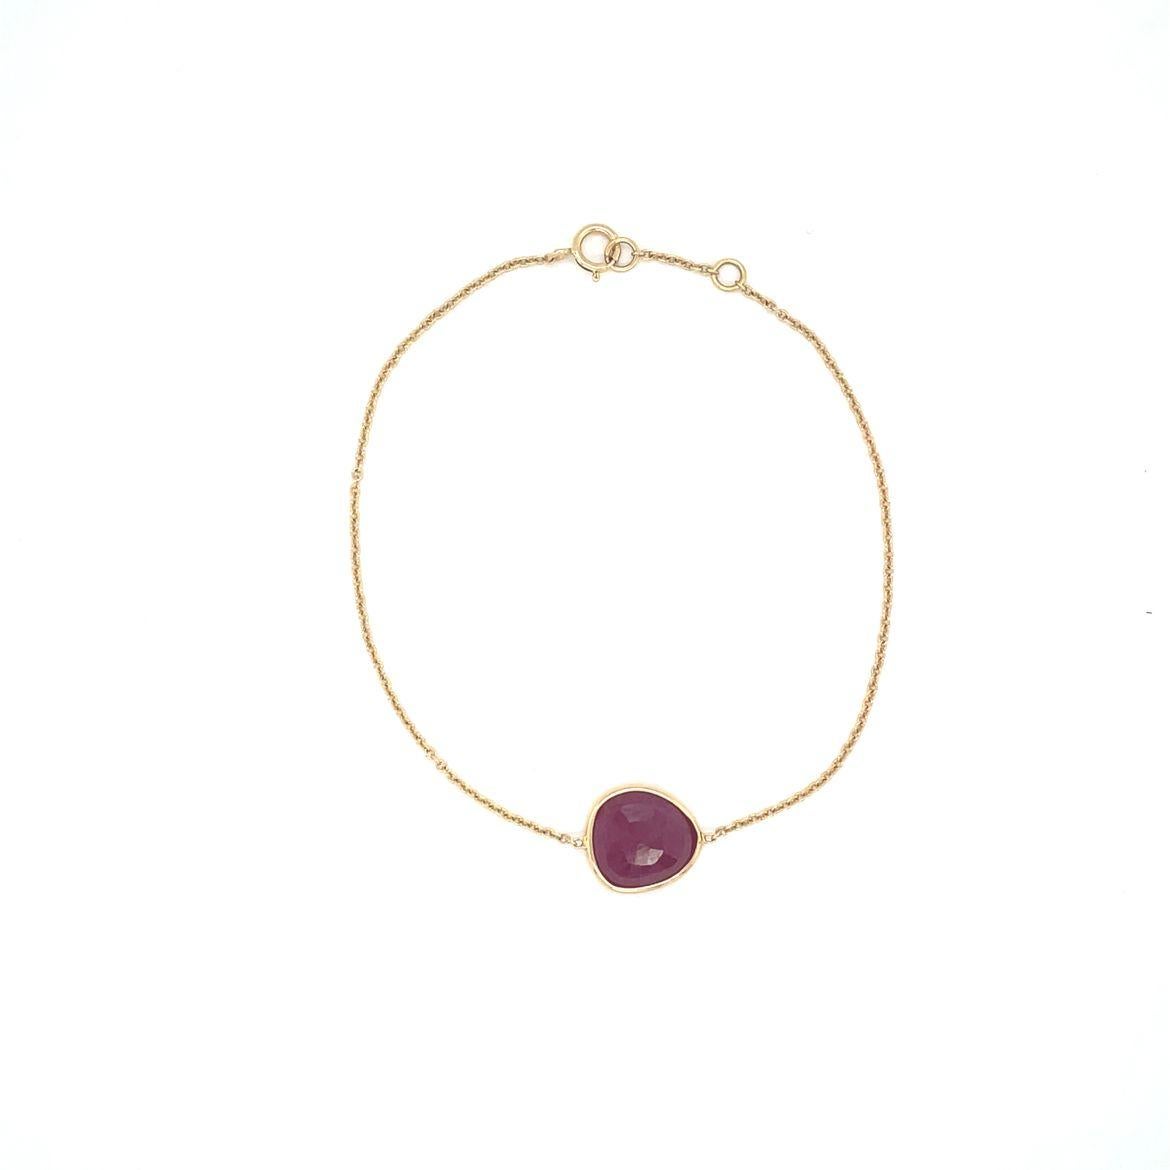 Ce charmant bracelet est fabriqué à la main en or 18 carats et présente un rubis de forme ovale irrégulière, taillé en rose et en goutte unique. Le Rubis est naturel, pesant environ 0,76 carats, enveloppé dans de l'or jaune 18K, et flottant au